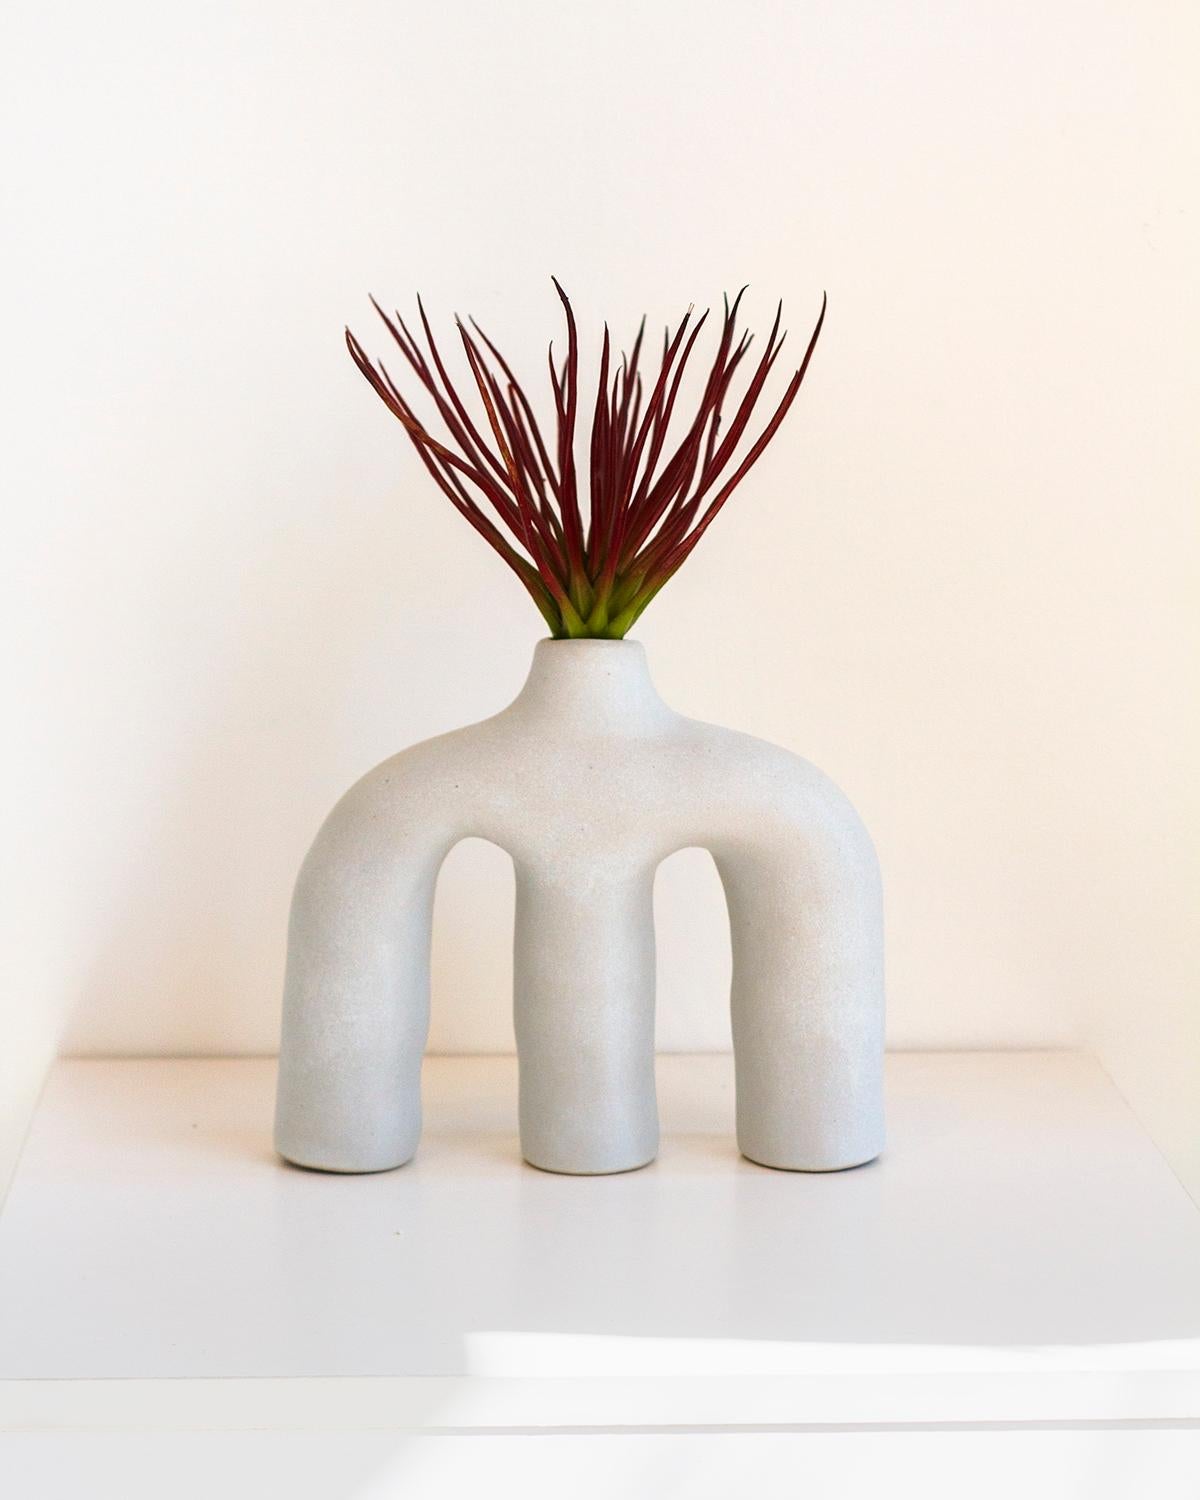 Ce vase en terre cuite d'une beauté unique possède trois pieds et une petite ouverture dans le haut pour les fleurs ou les branches. Il a été fabriqué à la main dans un style moderne organique pour s'intégrer dans n'importe quelle maison